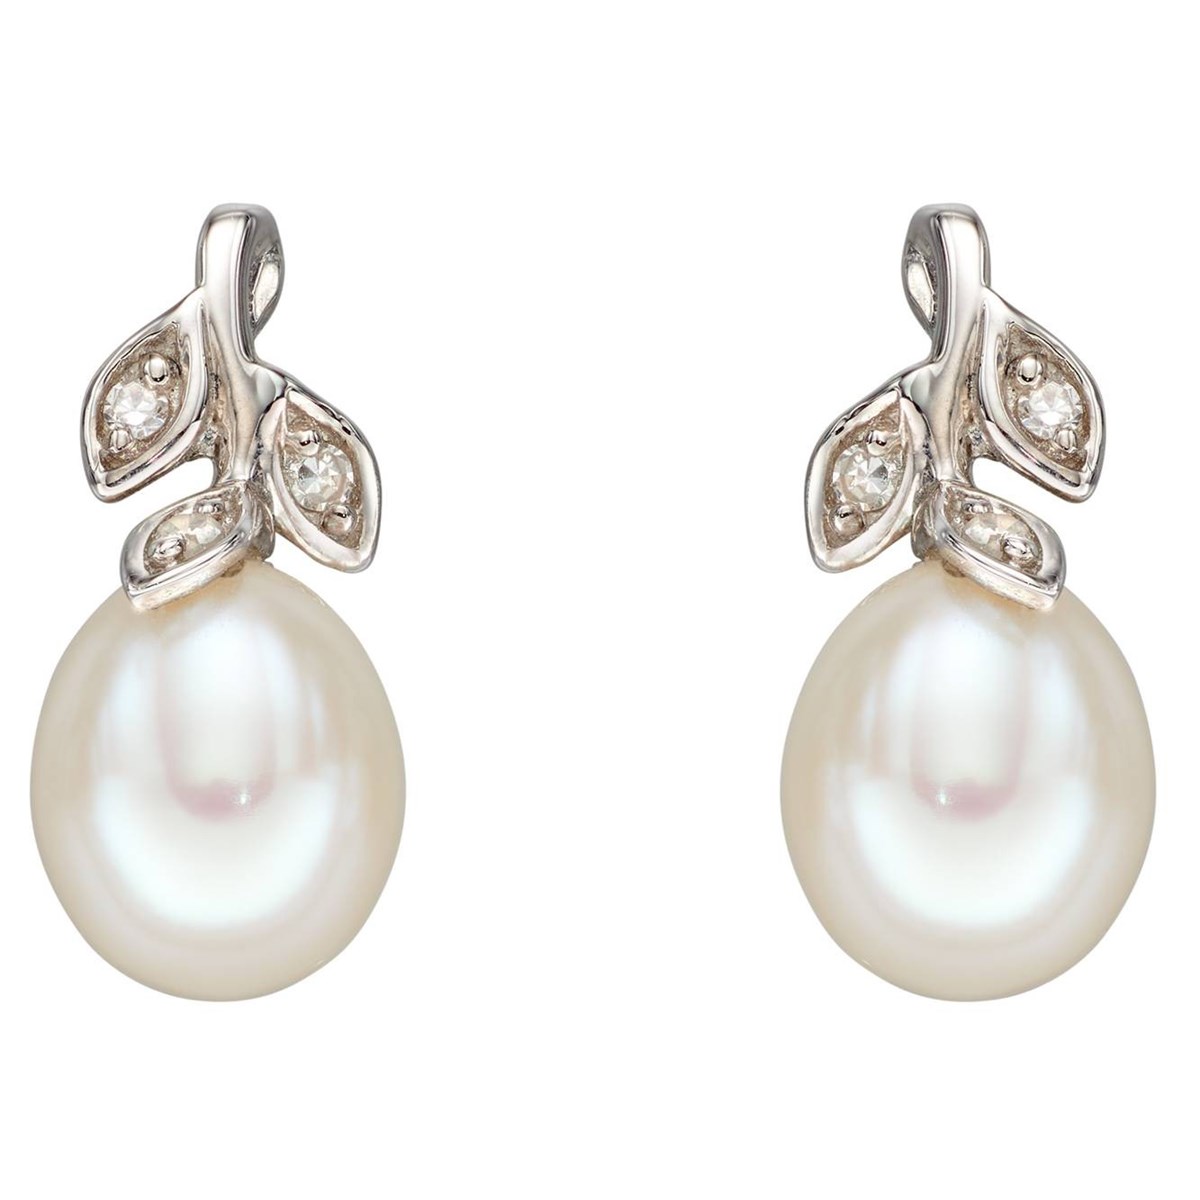 Boucle d'oreille perle et diamant en or blanc 375/1000